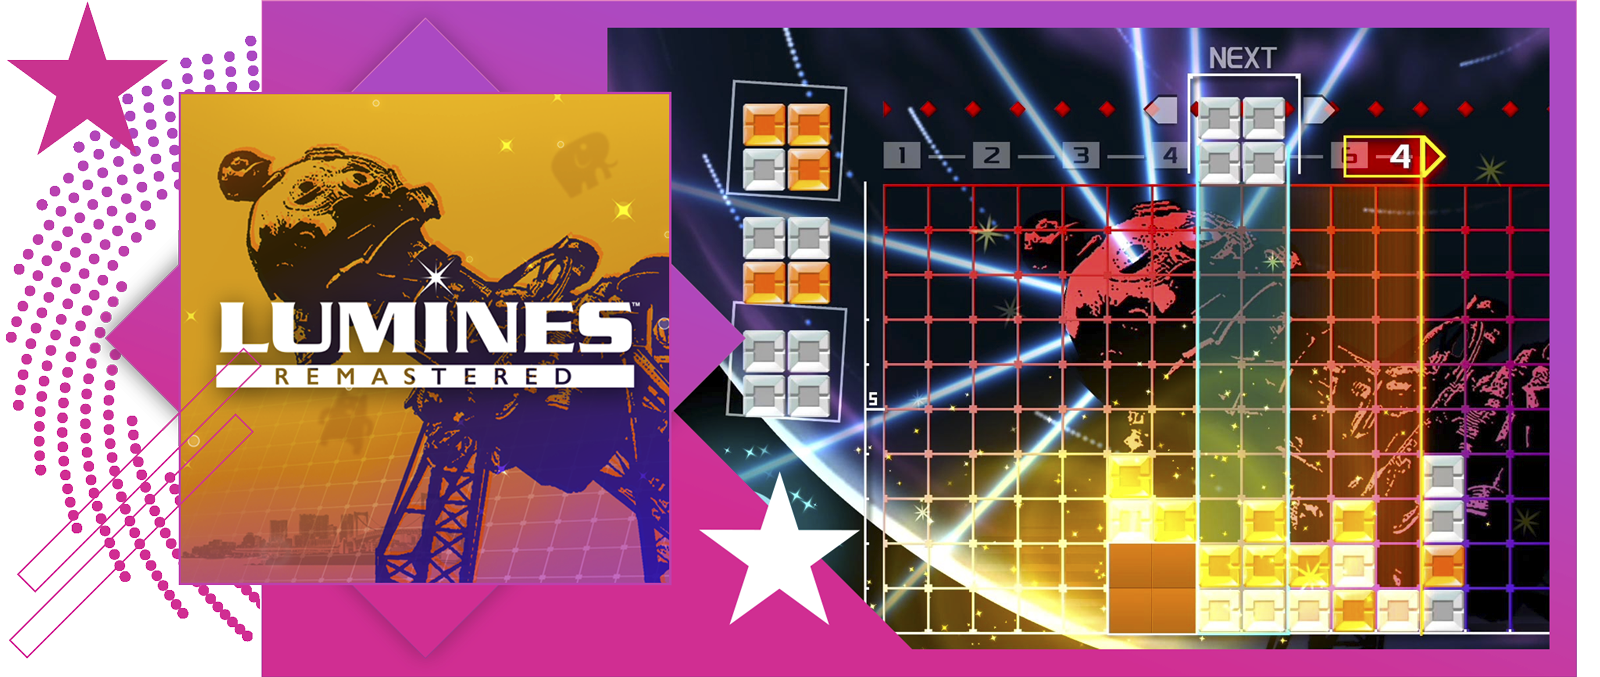 Parhaat rytmipelit -esittelyn kuva, jossa promokuvitusta ja pelikuvaa pelistä Lumines Remastered.